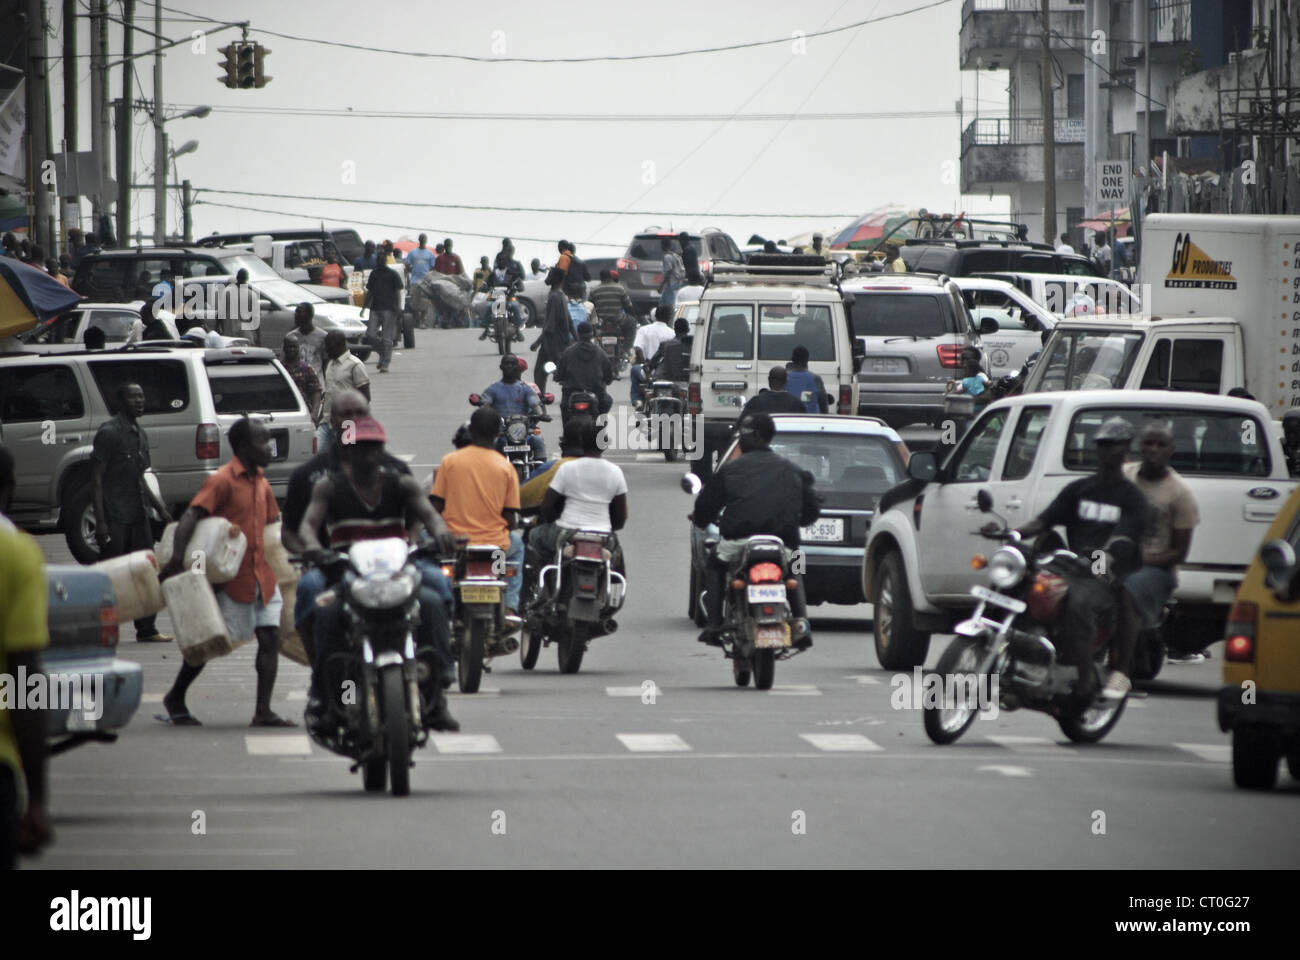 Il centro di Monrovia, Liberia Foto Stock